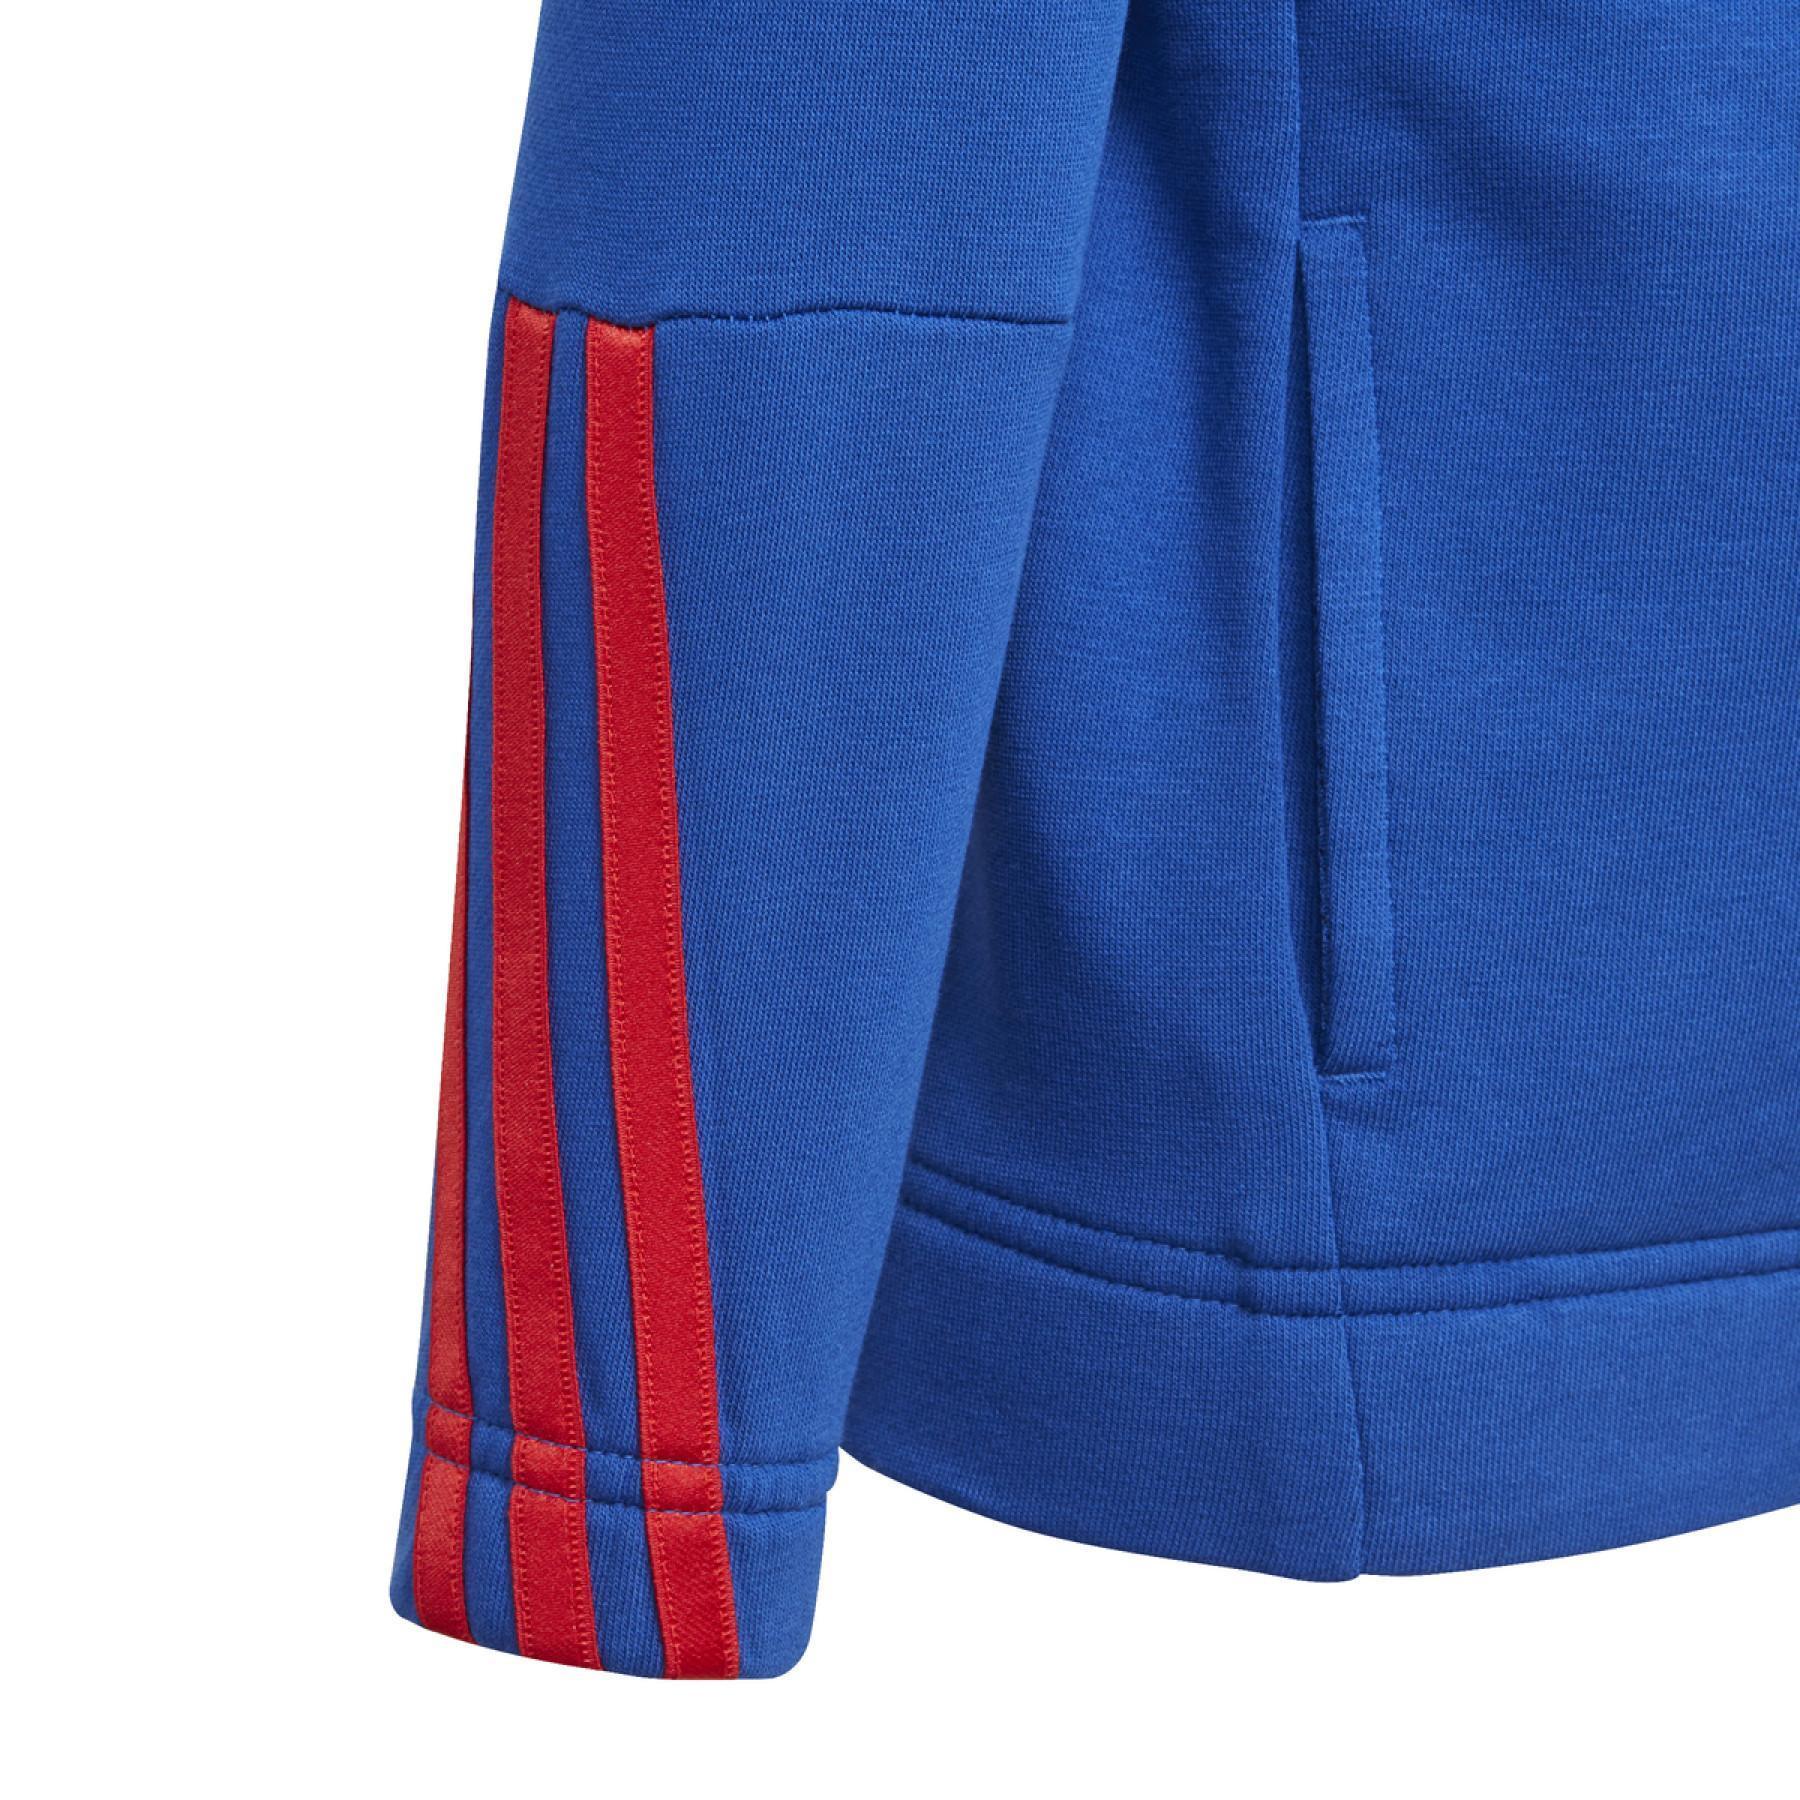 Children's zip-up jacket adidas Superhero Adventures Cover-Up